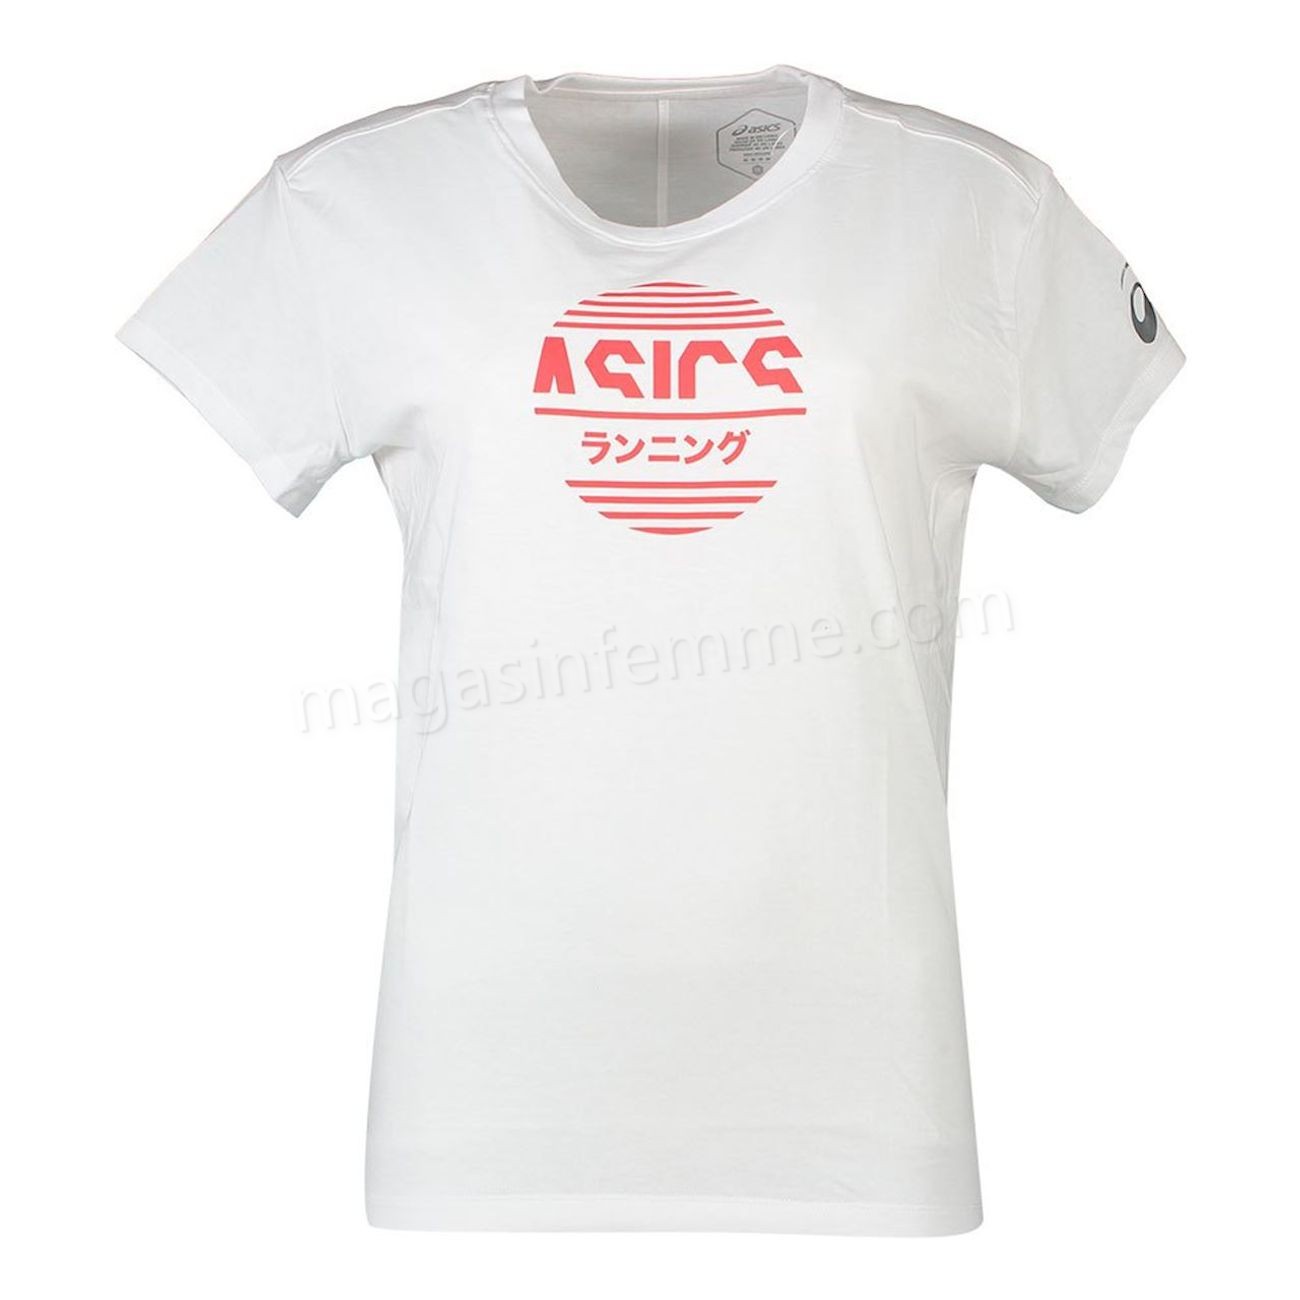 Asics-Fitness femme ASICS T-shirt femme Asics Tokyo Graphic en solde - Asics-Fitness femme ASICS T-shirt femme Asics Tokyo Graphic en solde